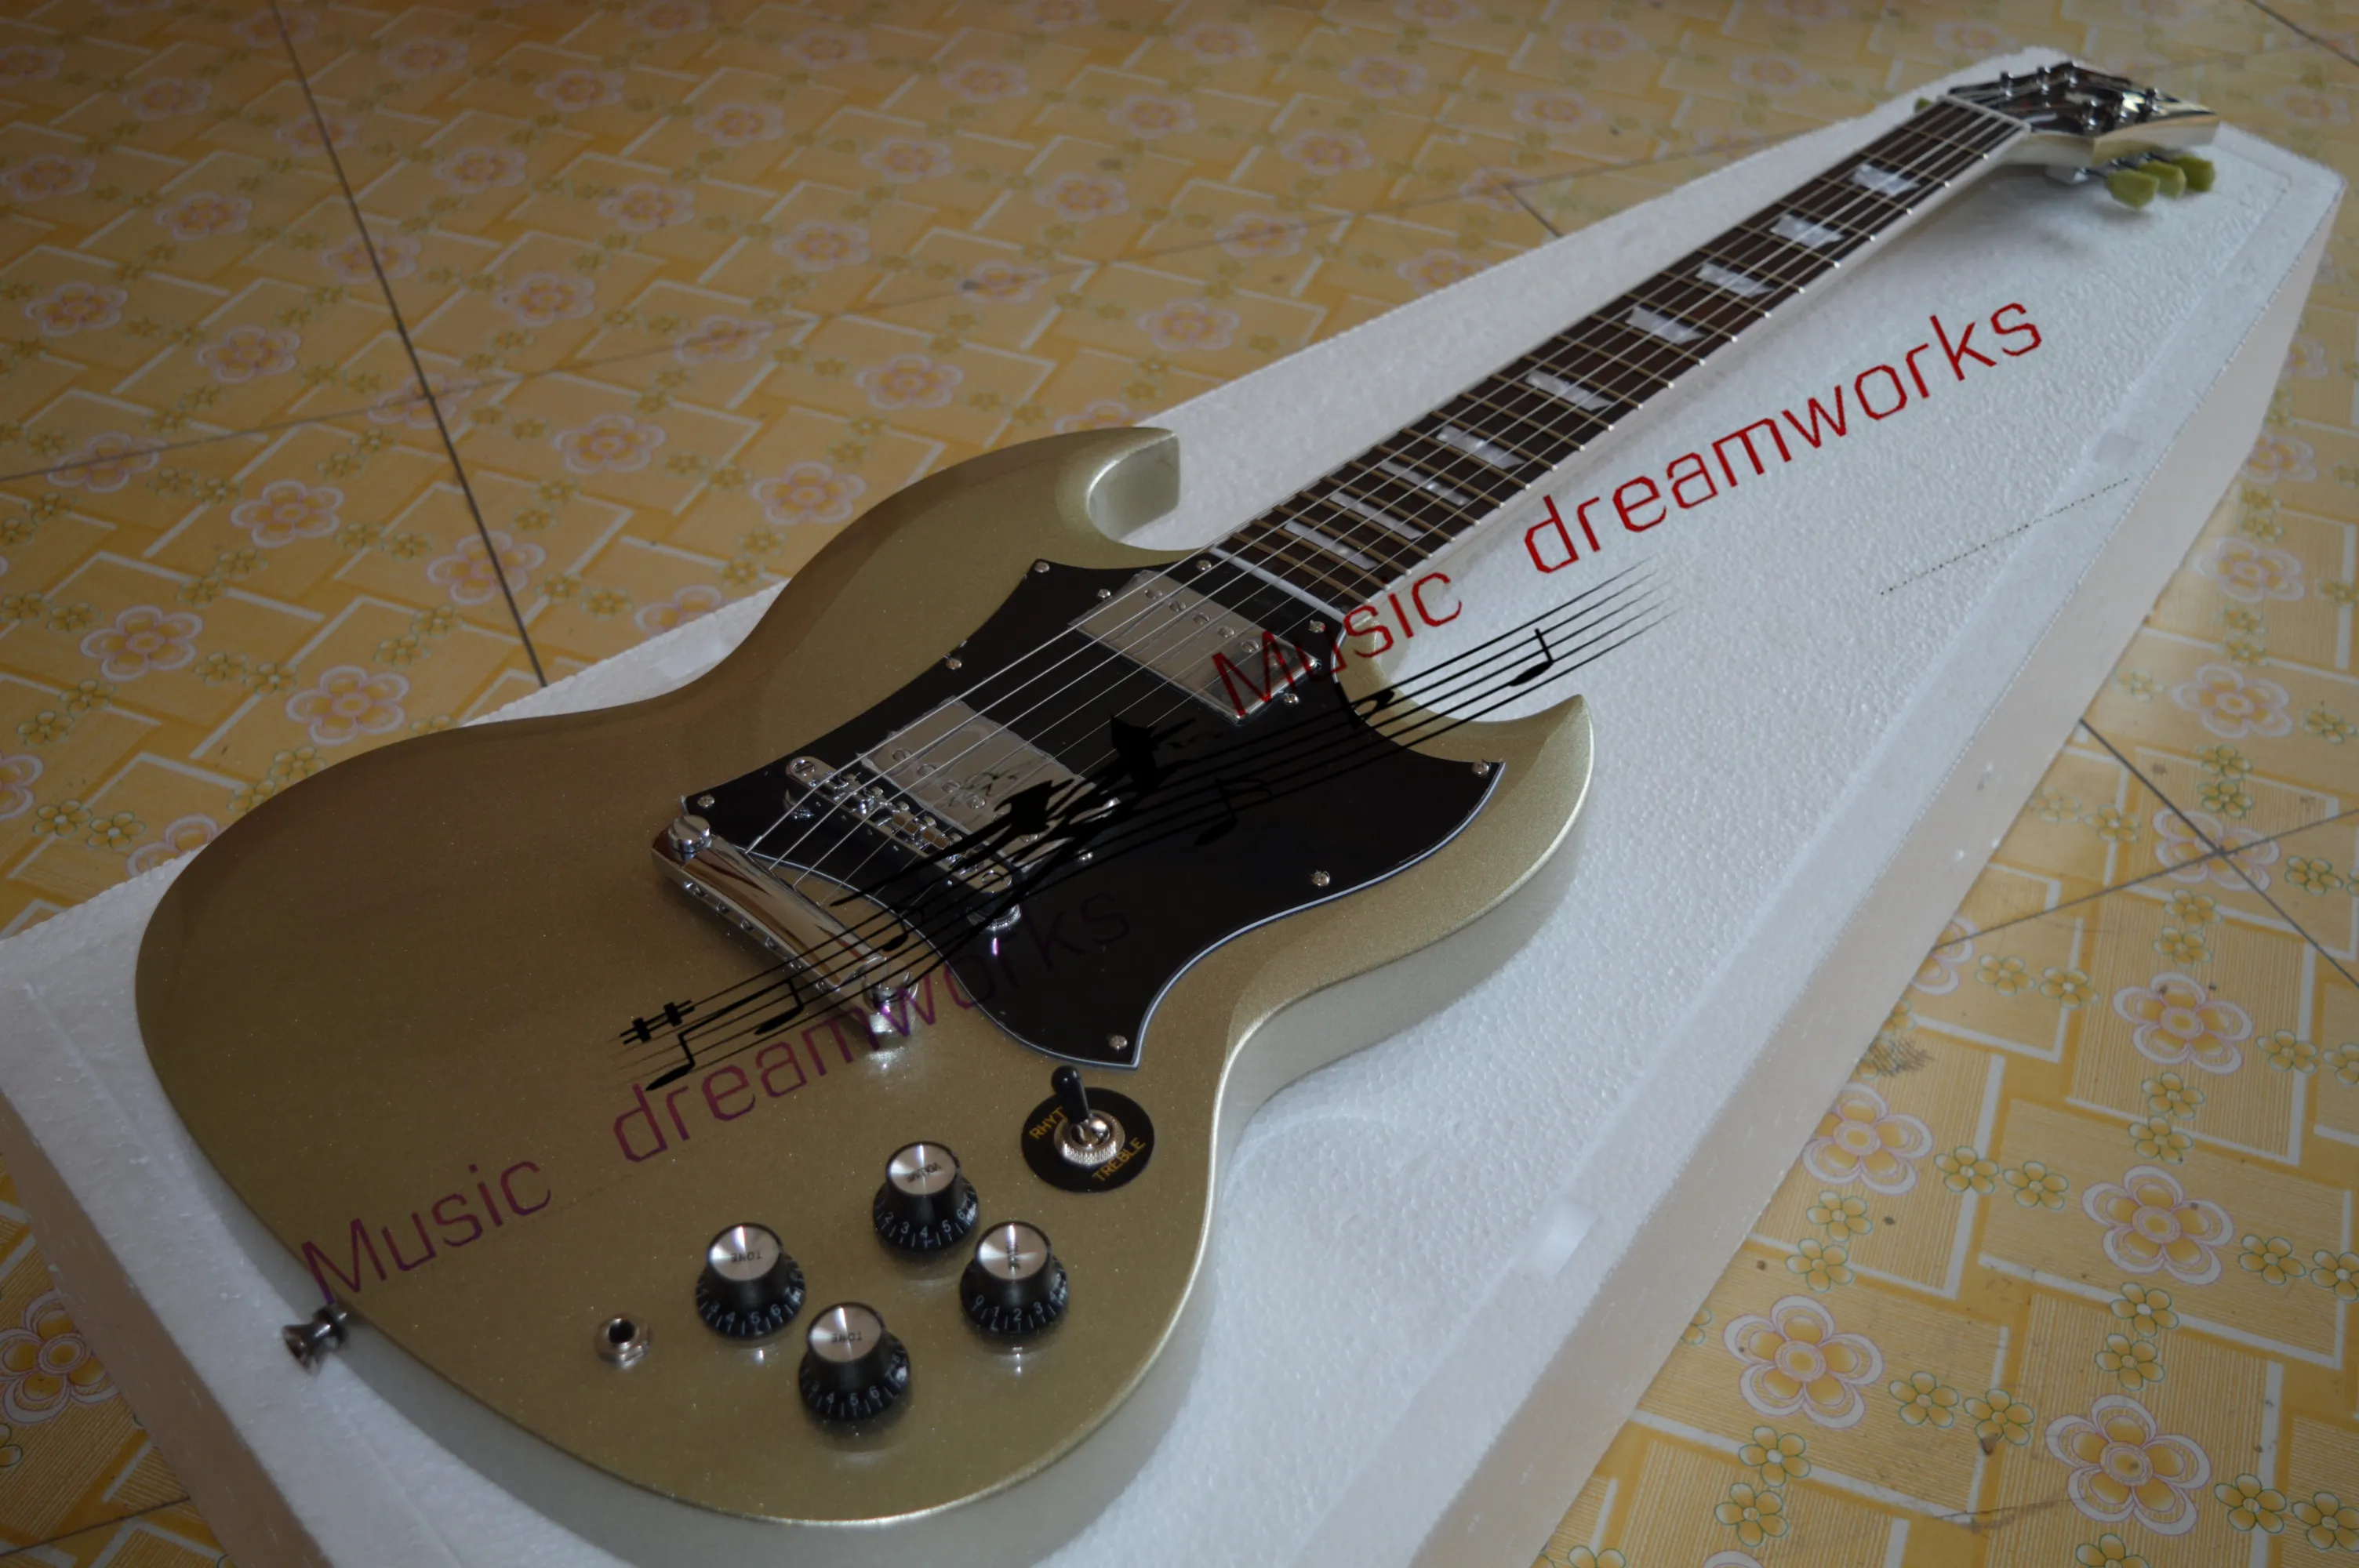 Metal srebrny proszek G-400 Wysokiej jakości gitara elektryczna SG, sprzęt sprzętowy niklu, duża tablica ochrony pickupu, w magazynie, szybka wysyłka